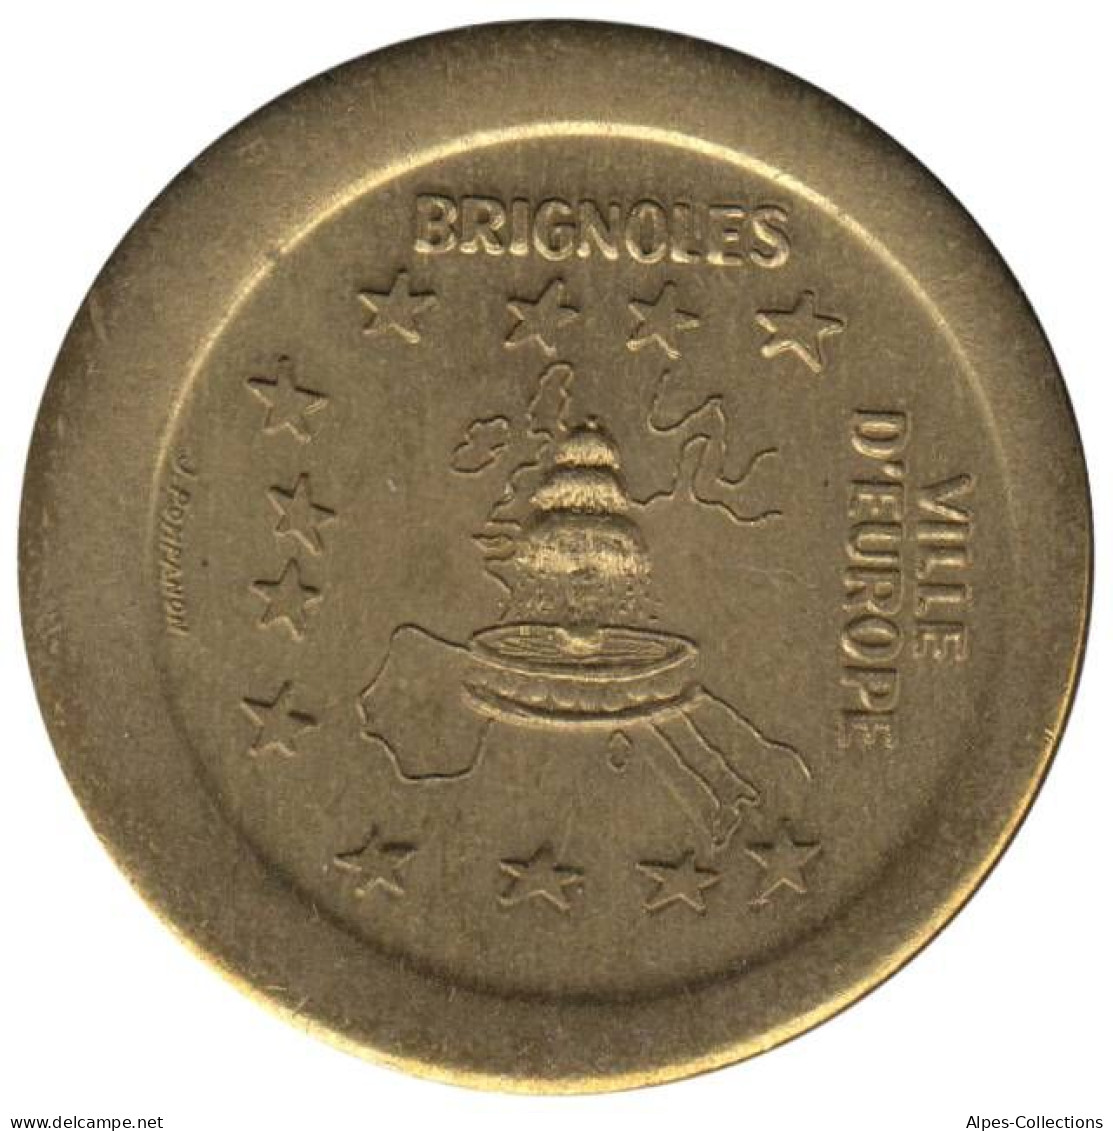 BRIGNOLE - EU0000.1 - EURO DES VILLES - Réf: NR - Uniface - Euros De Las Ciudades